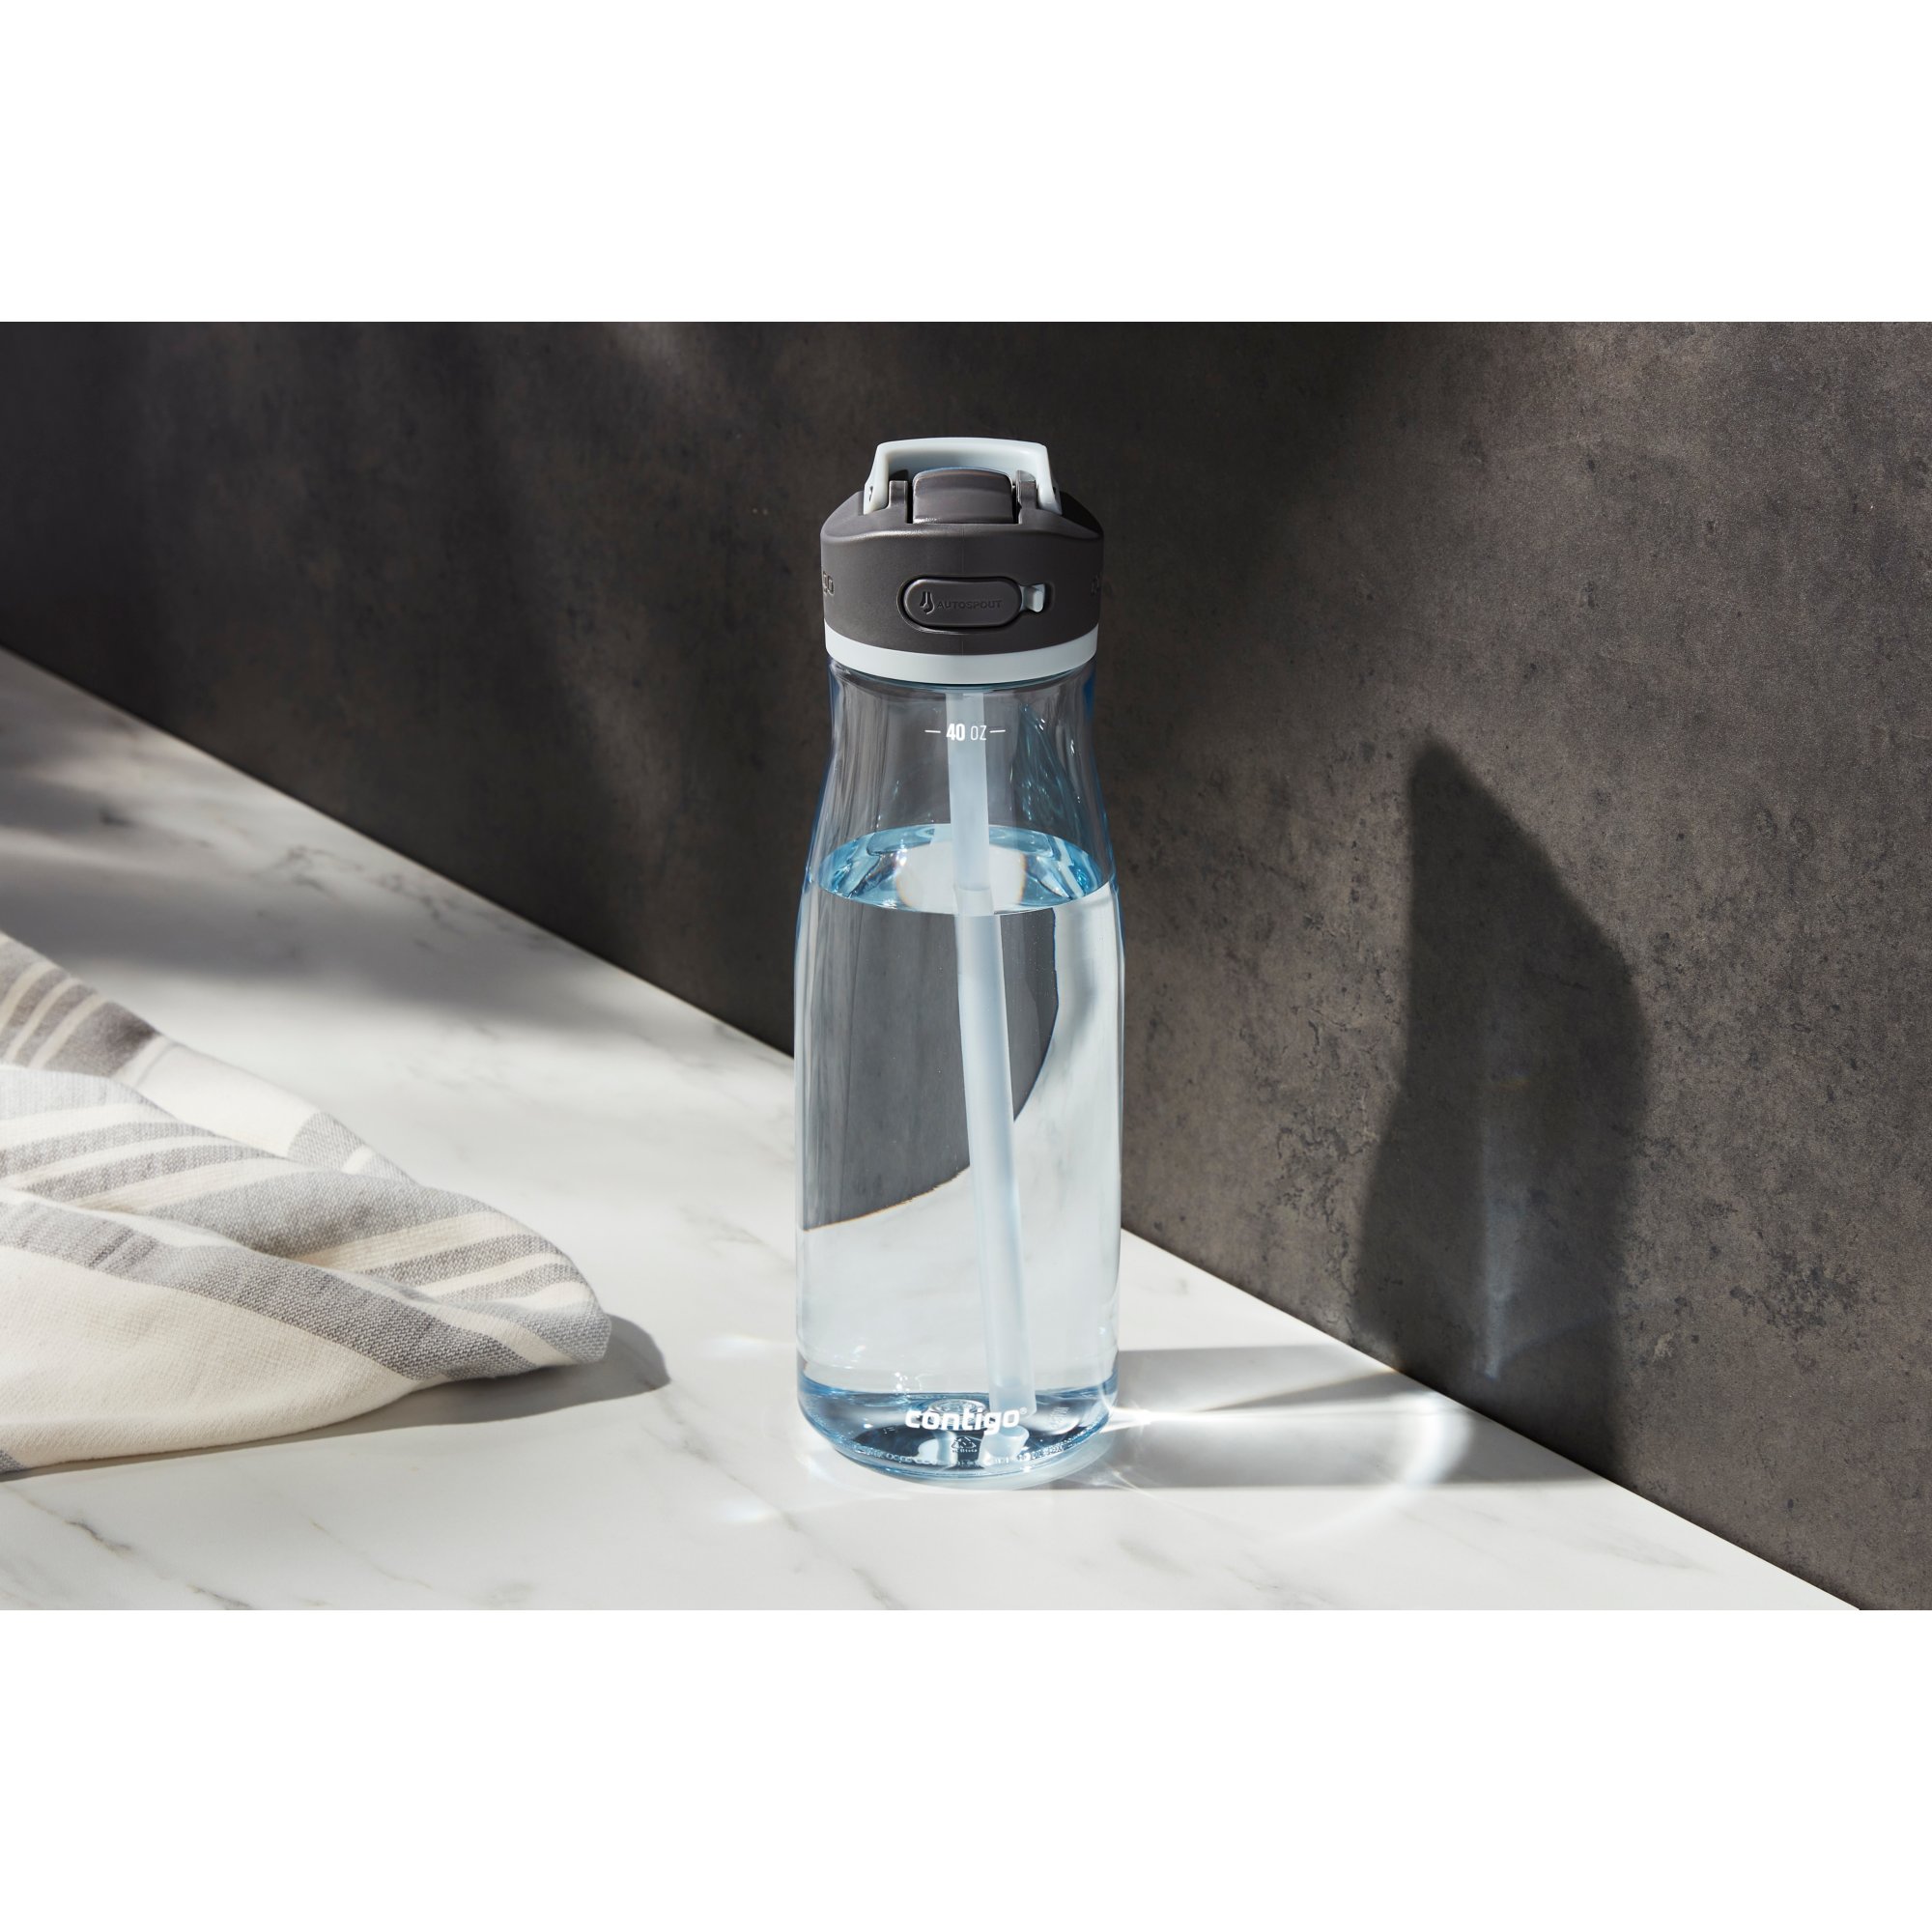 Contigo Ashland Leak-proof Autospout Straw Water Bottle, 40 Oz